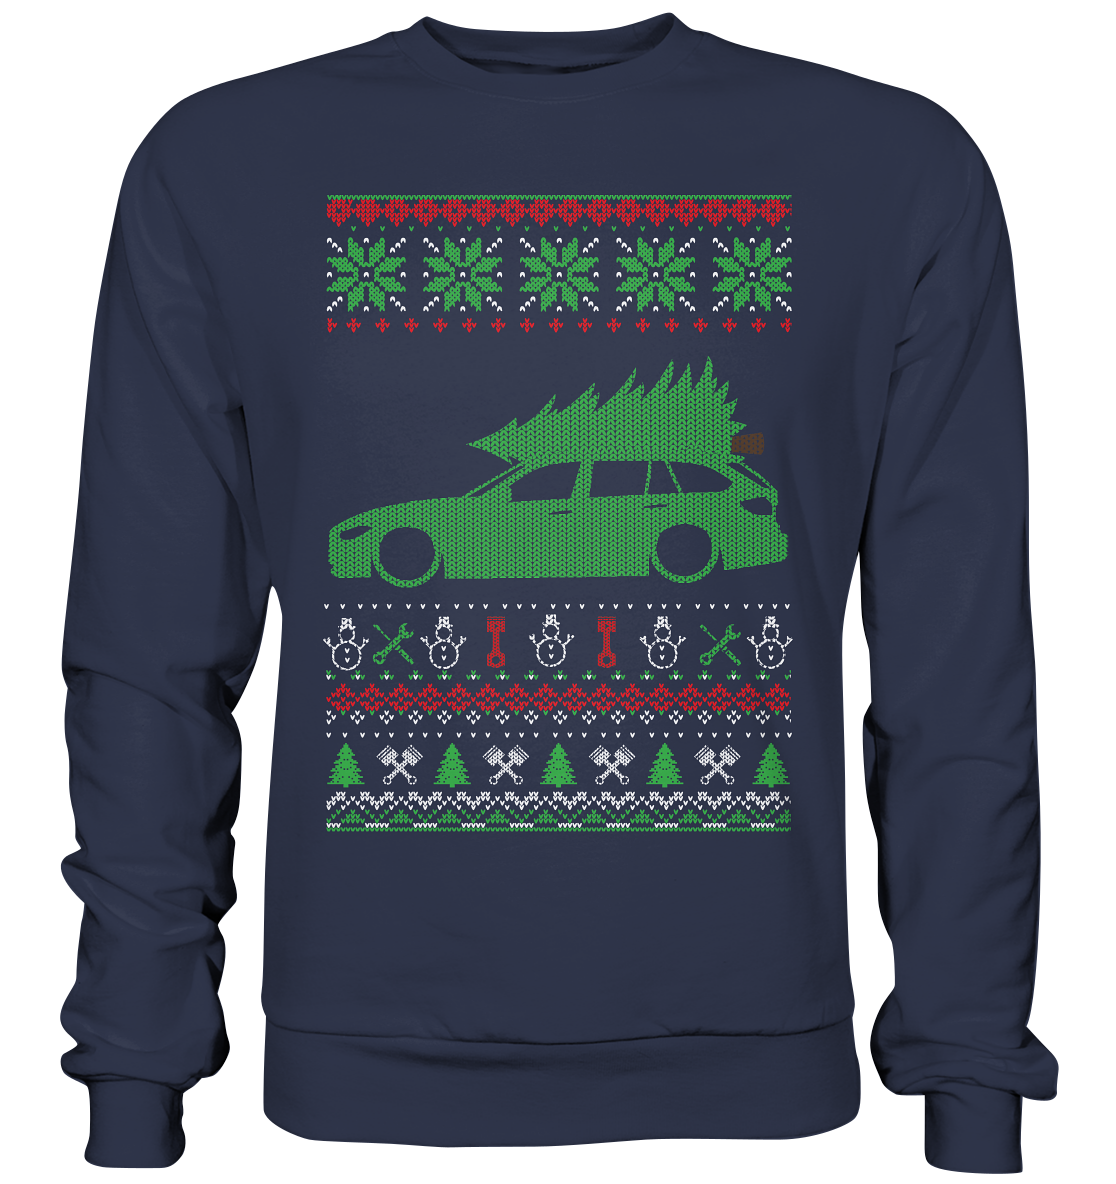 BGKF31UGLY - Premium Sweatshirt